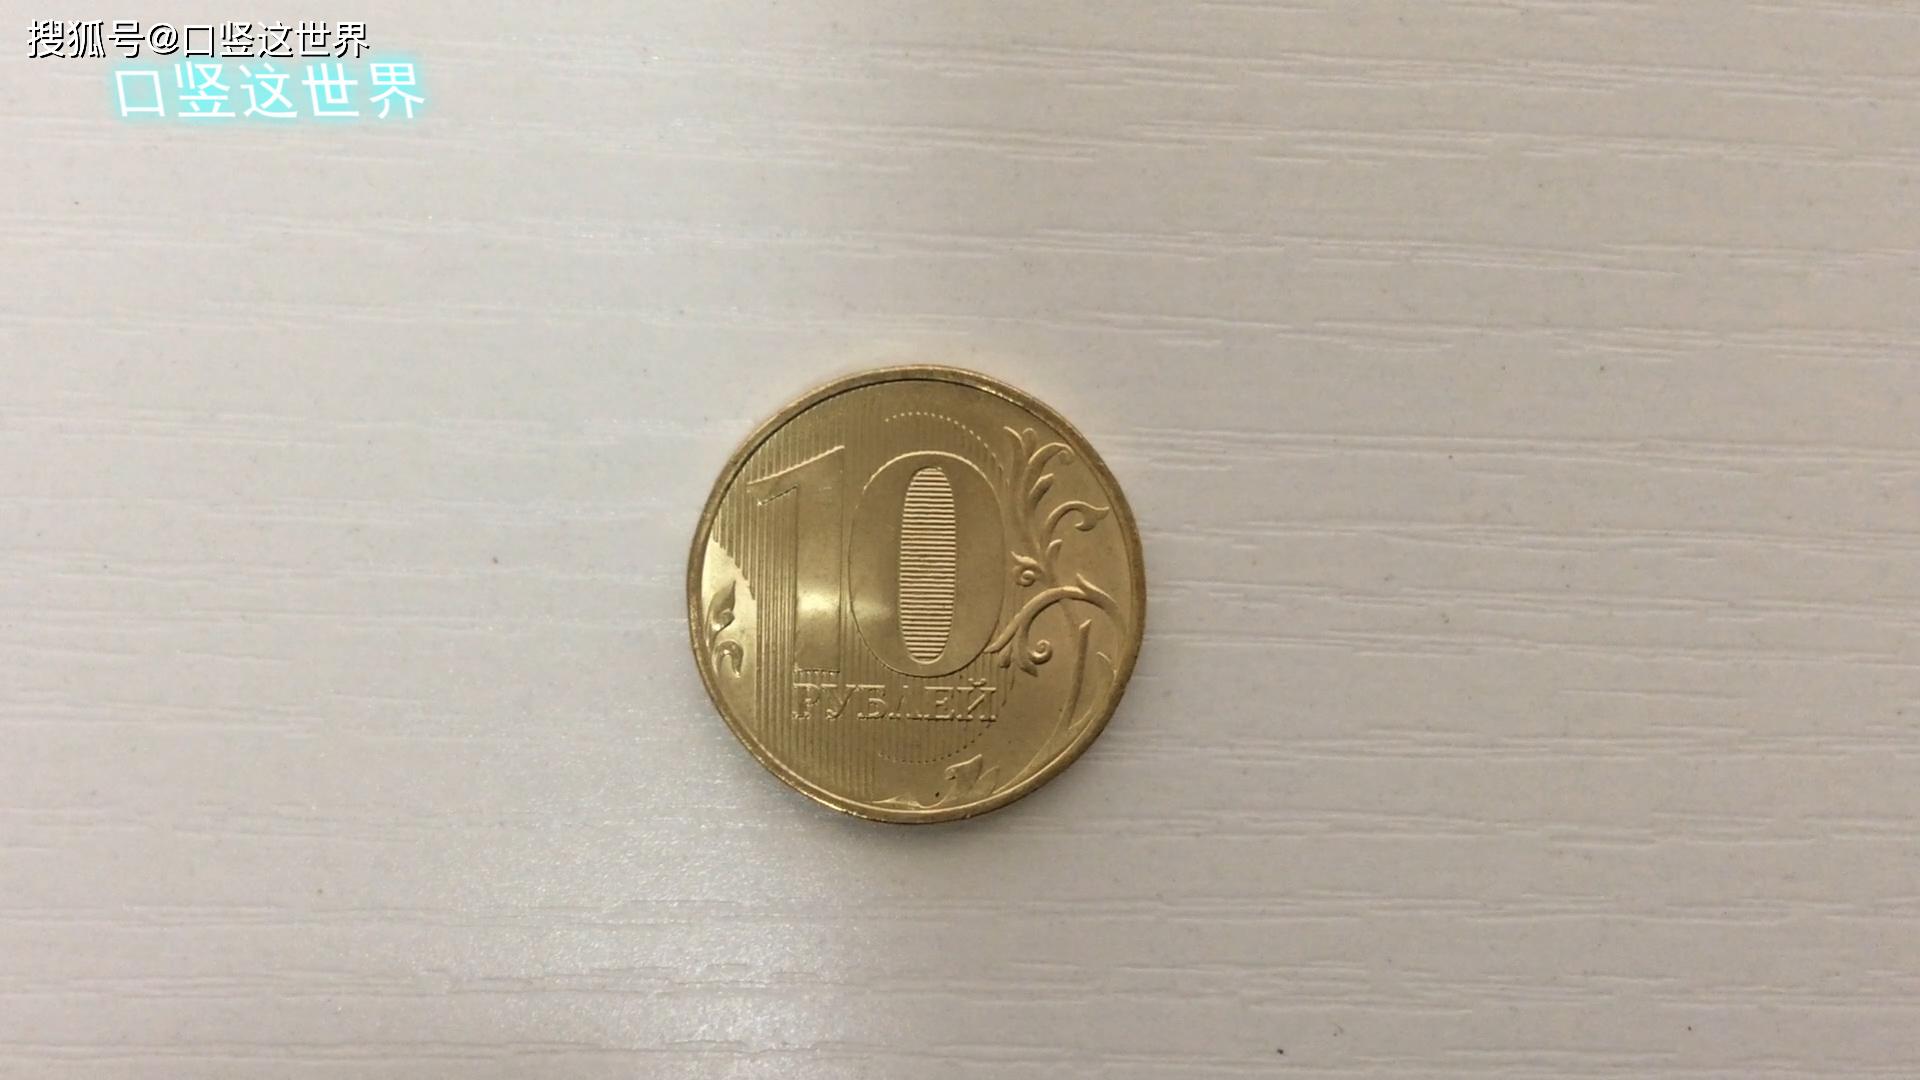 俄罗斯最大硬币10卢布